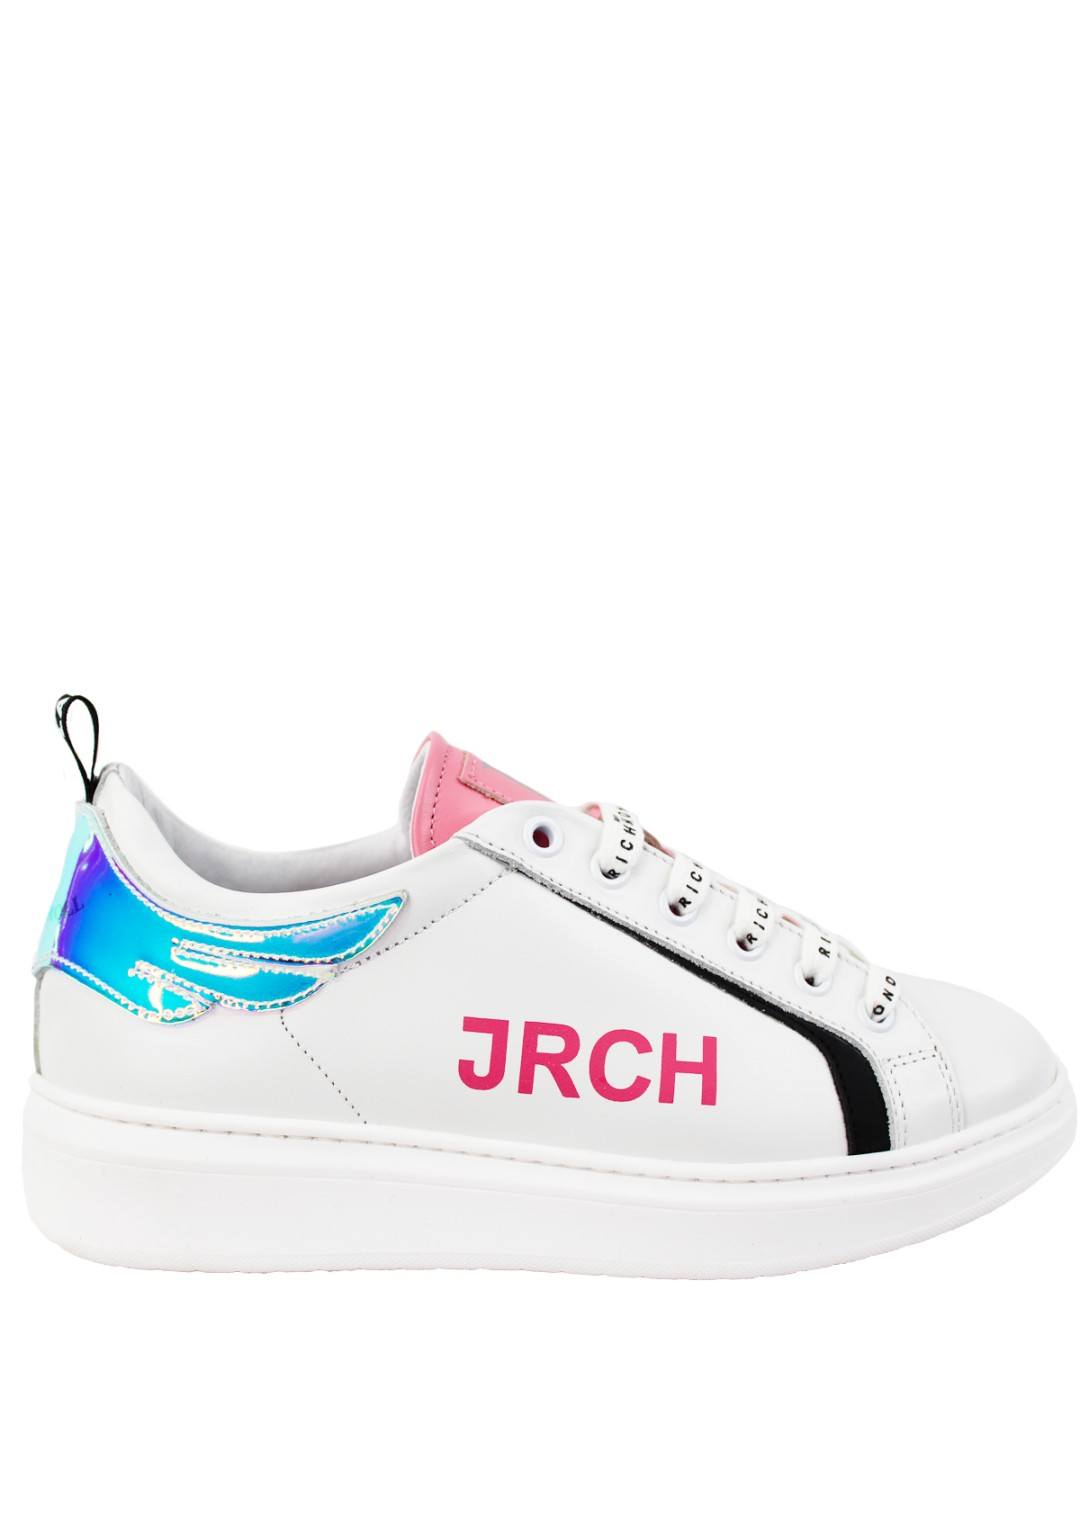 John Richmond - Sneakers Ali - Donna - 14703-B